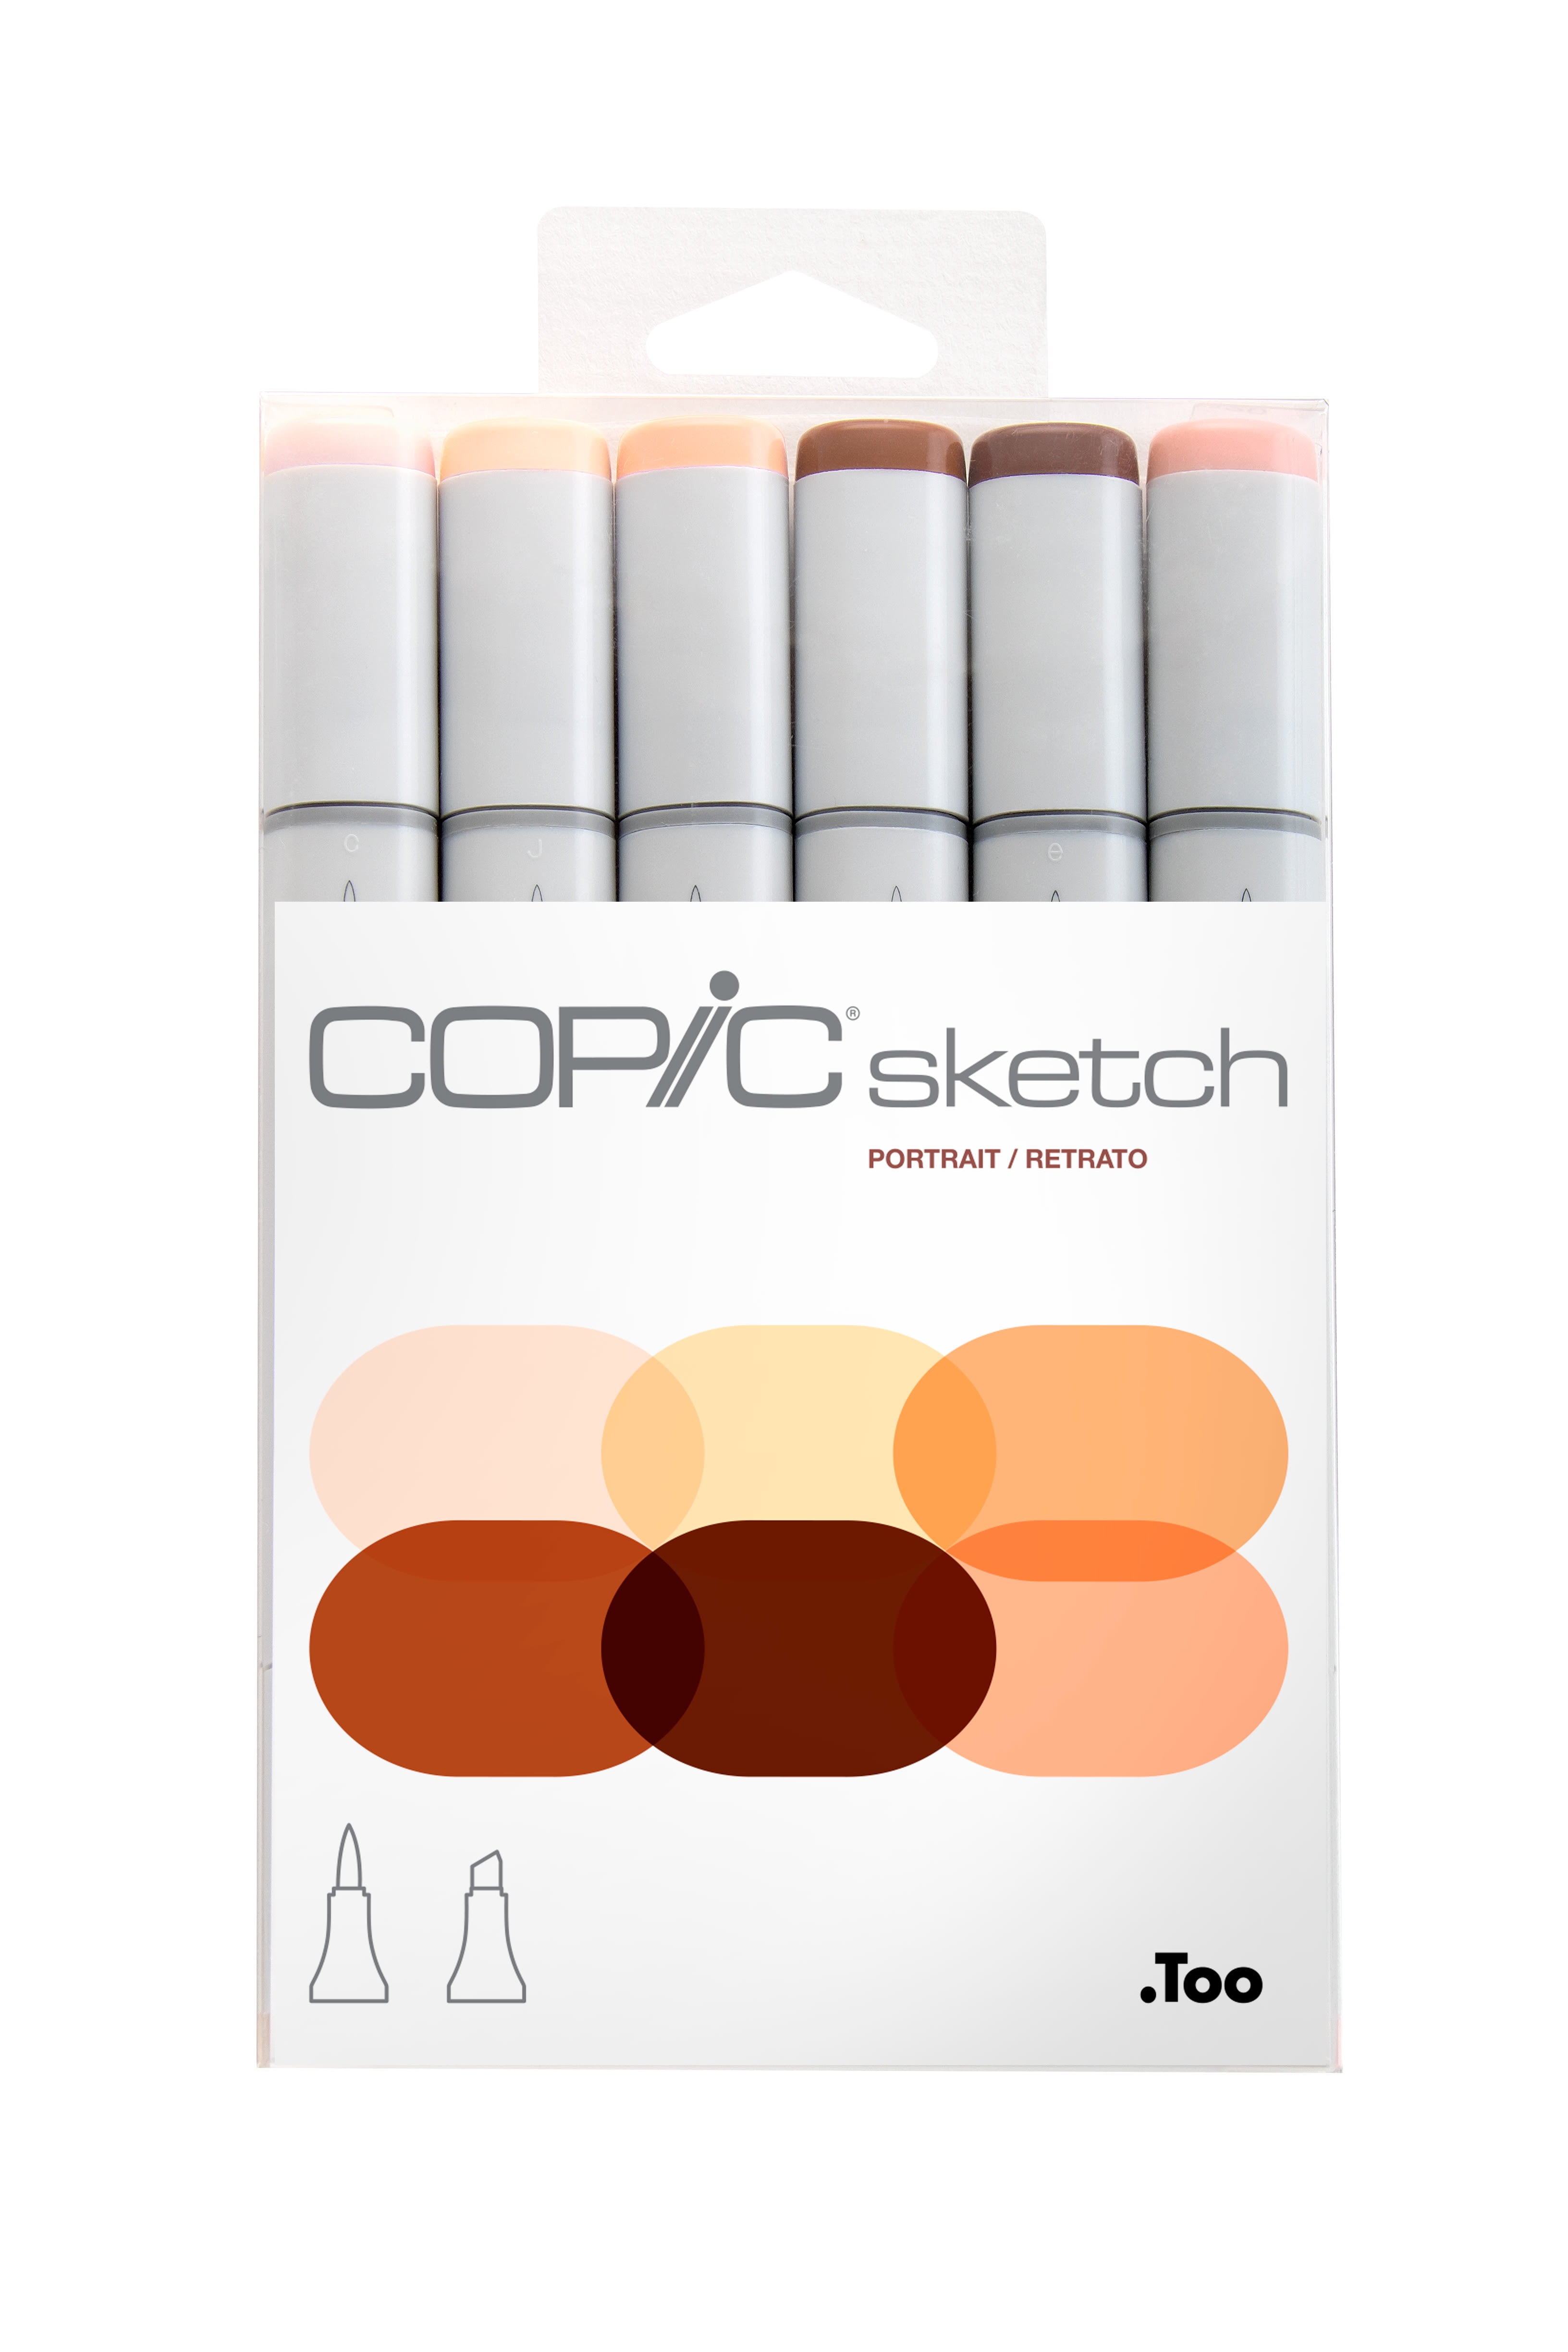 Copic Sketch Marker Set, 6-Colors, Floral Favorites 1 - 21619332